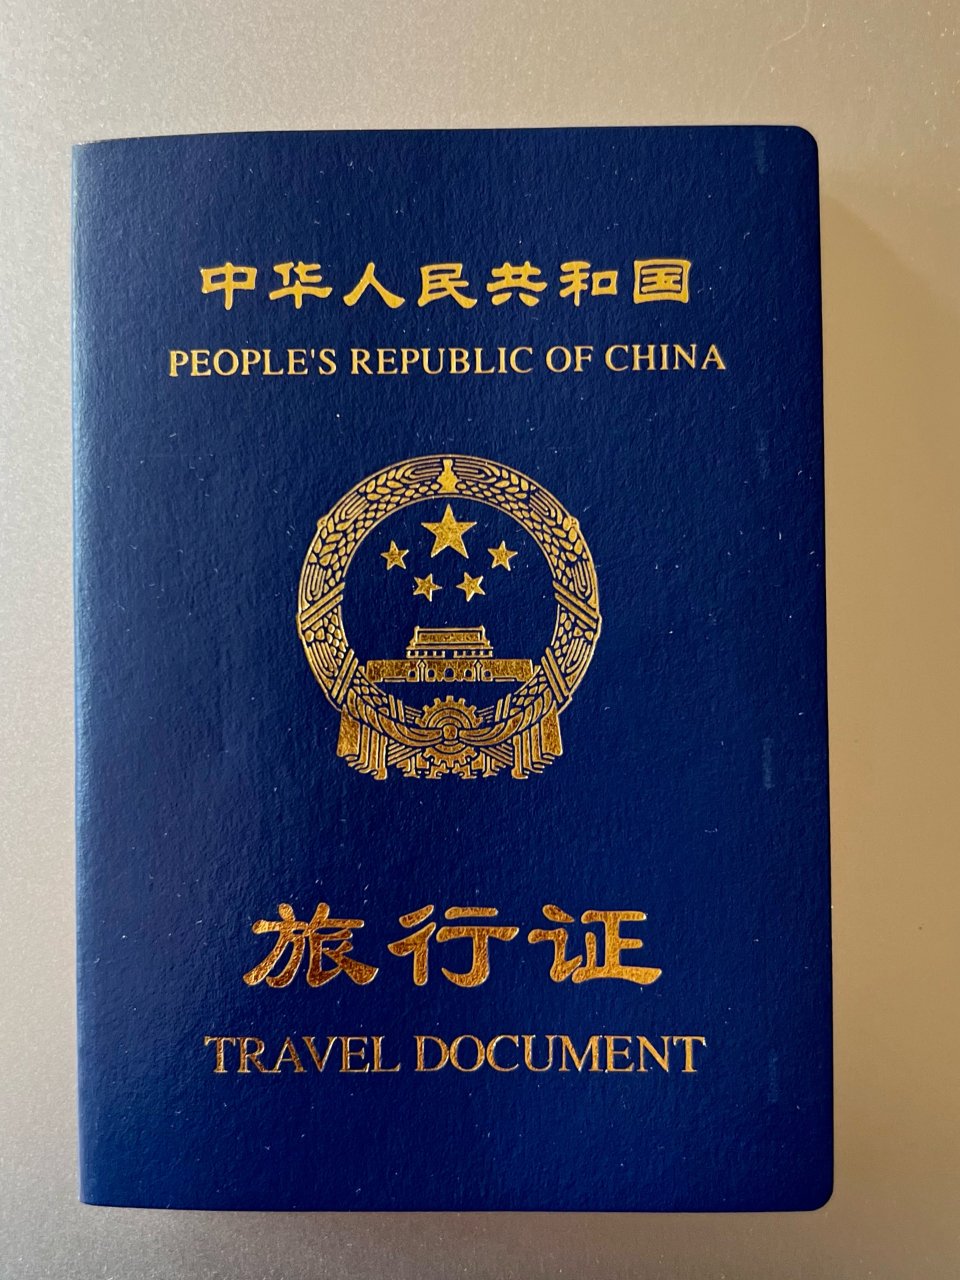 在美申请旅行证攻略4🌟旅行证GET✔️...